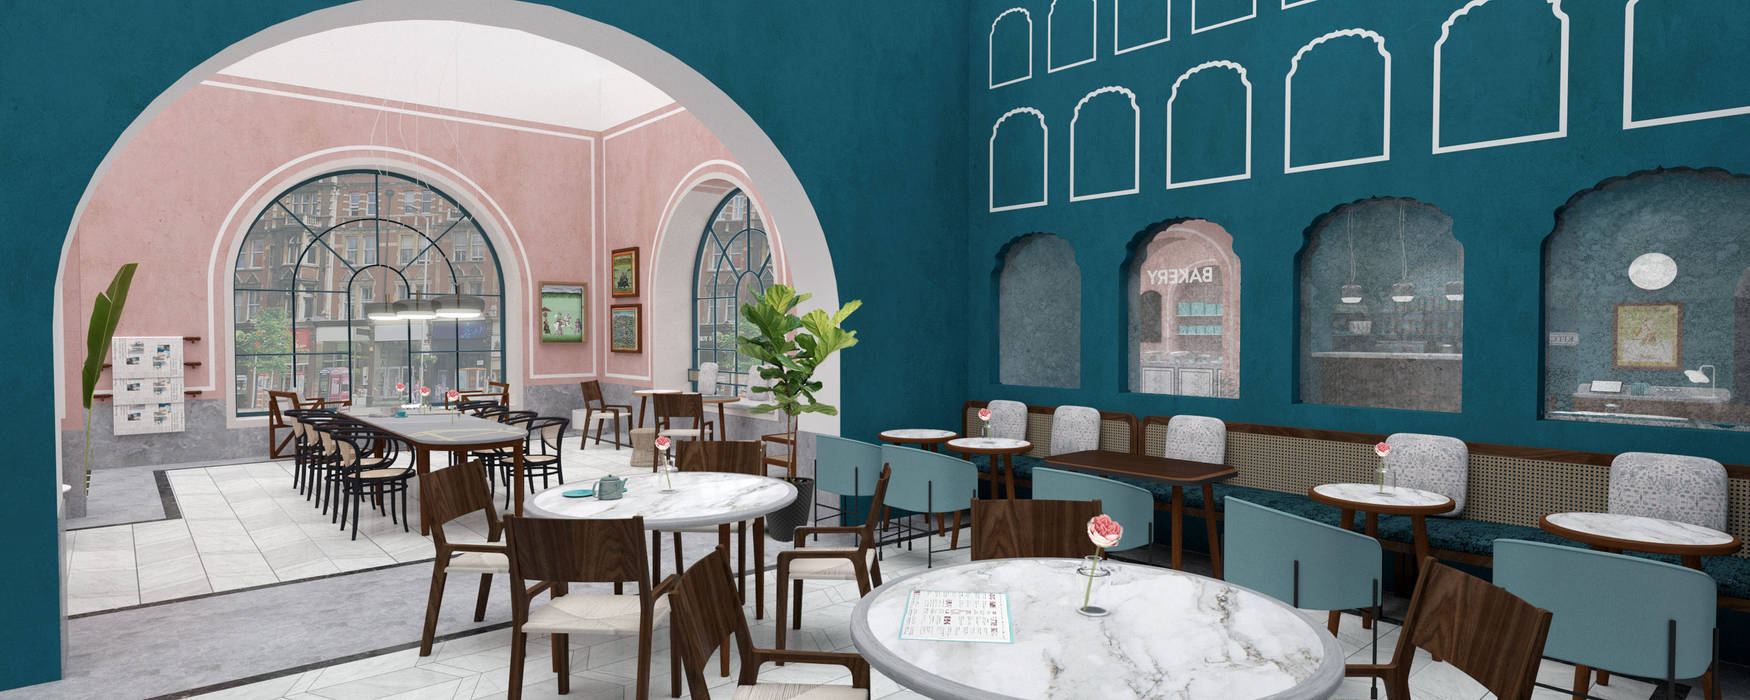 Pistachio Rose - Bakery & Cafe - Seating Area Lunar Lunar Espacios comerciales Restaurantes